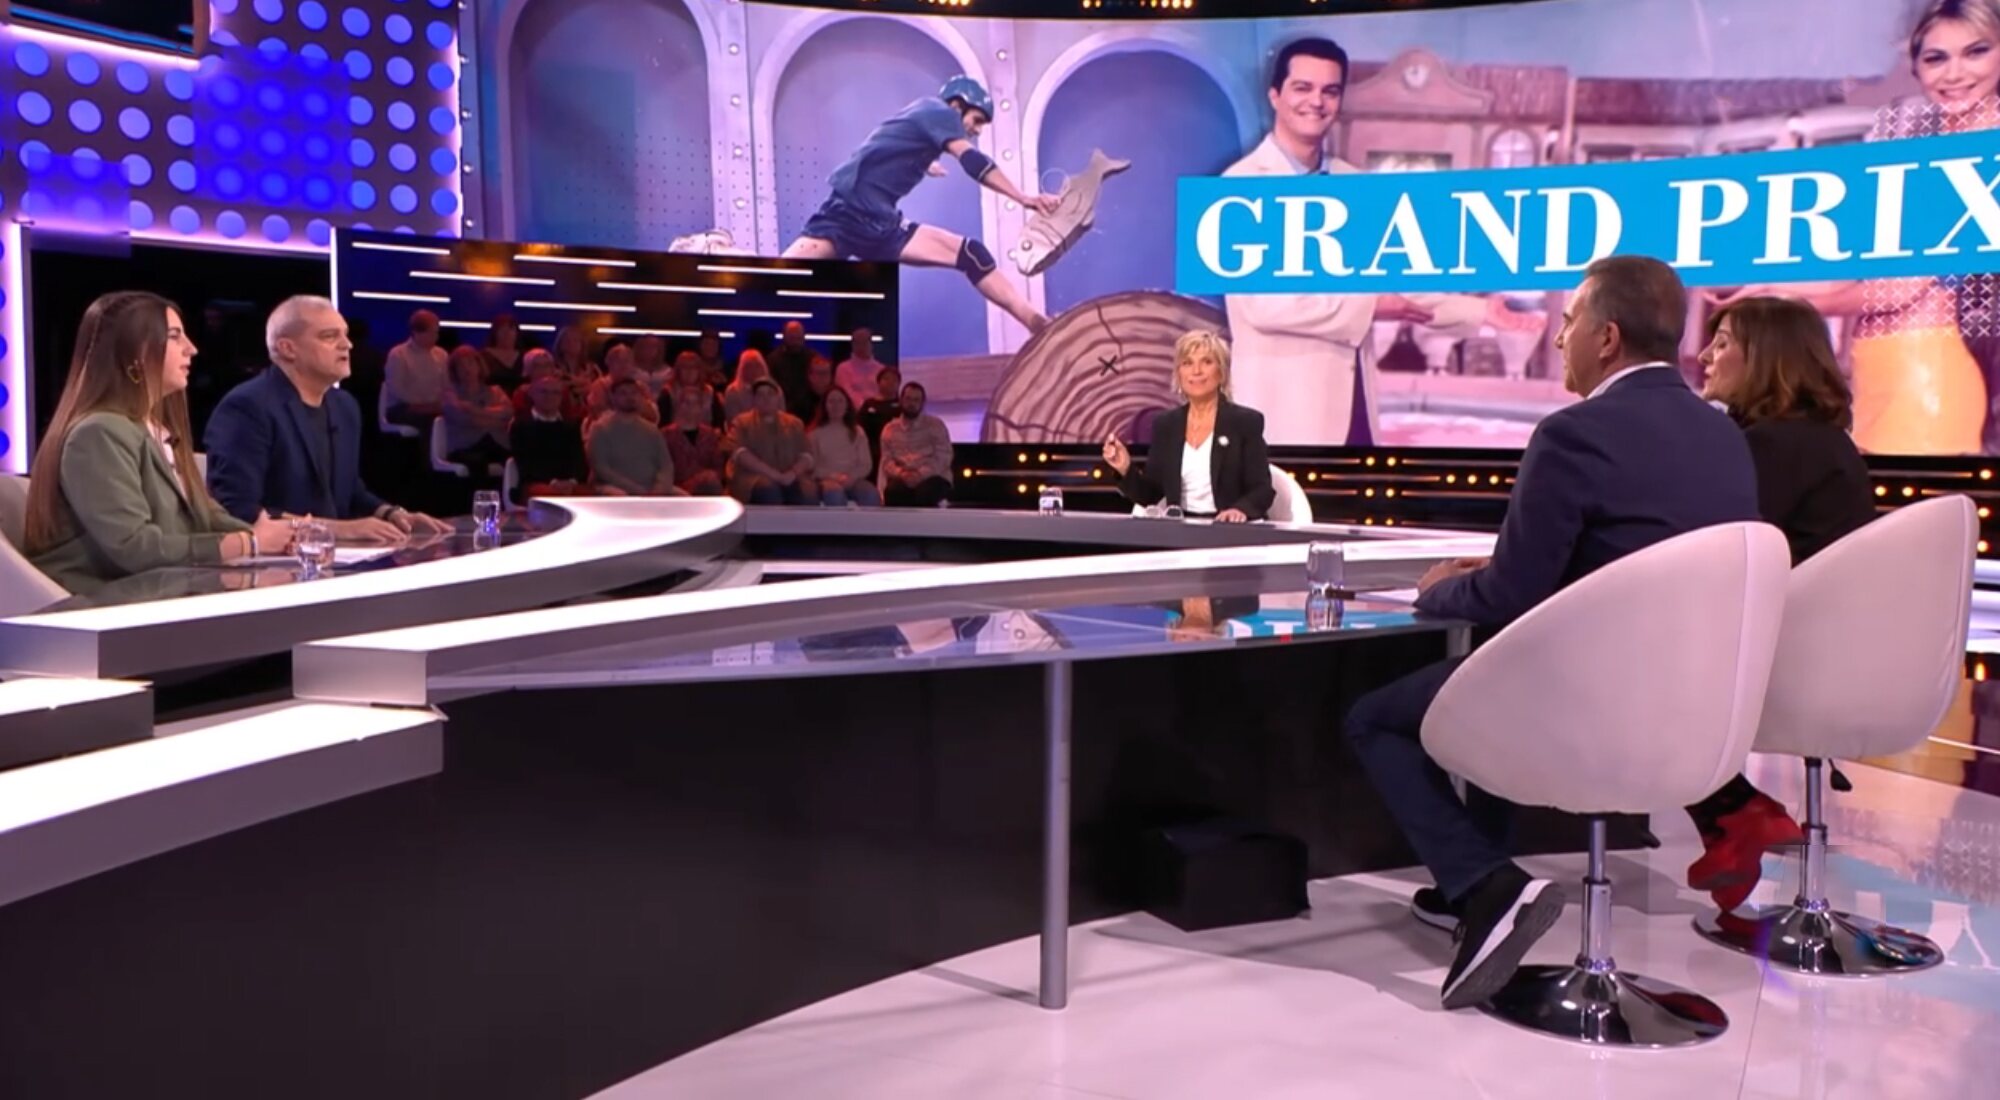 'Días de tele' recuerda el 'Grand Prix' con Ramón García